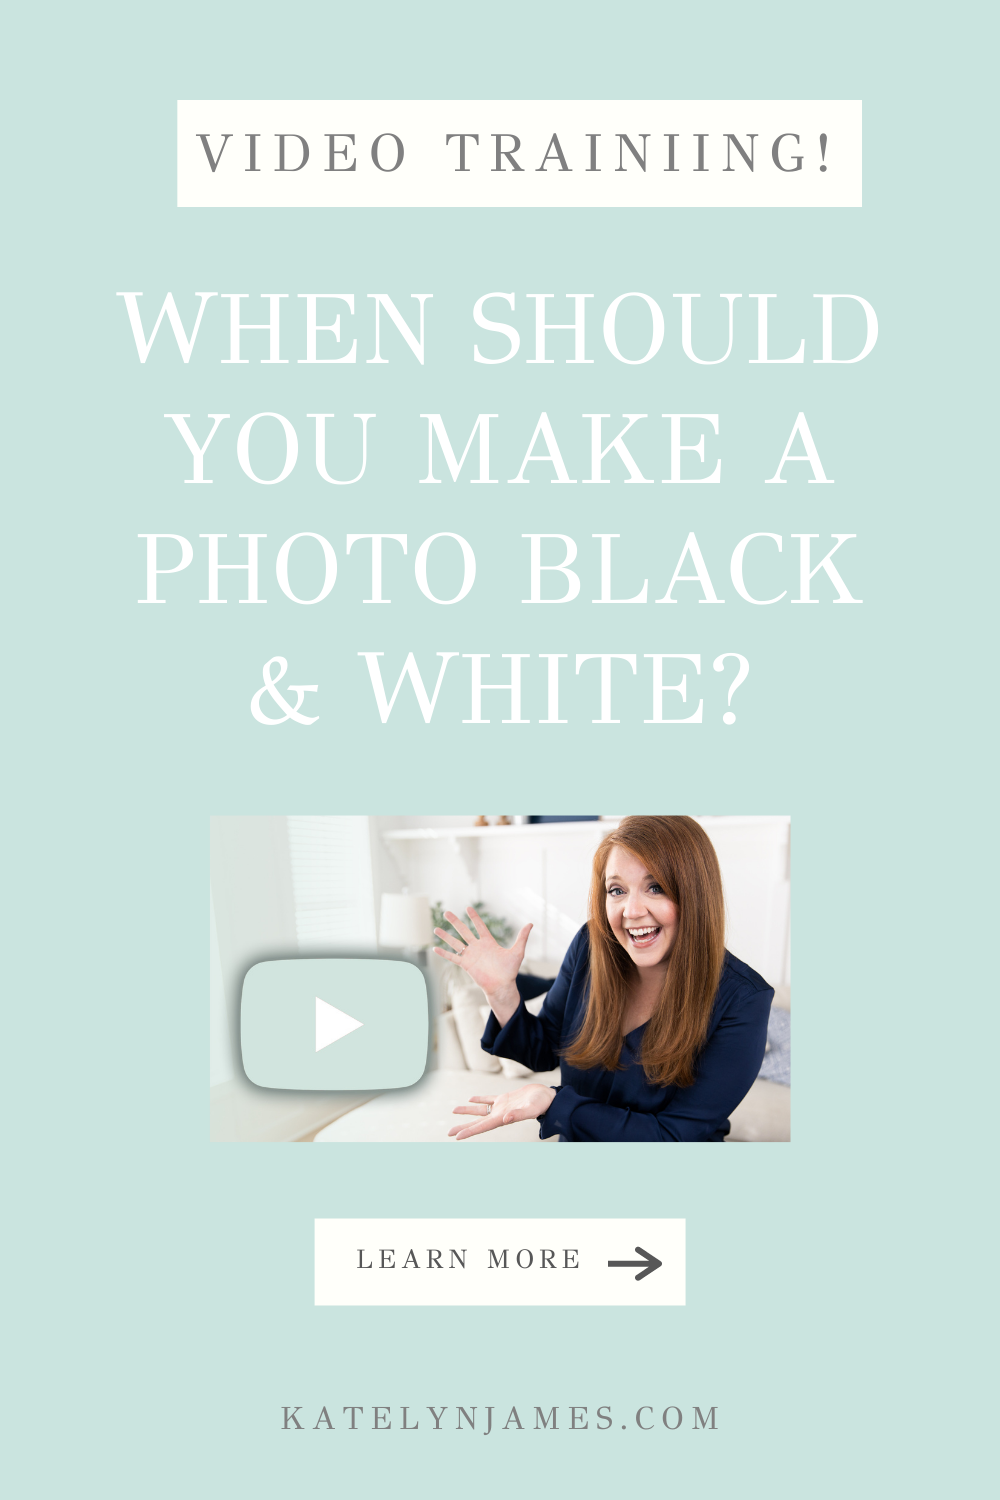 When should you make a photo black & white?